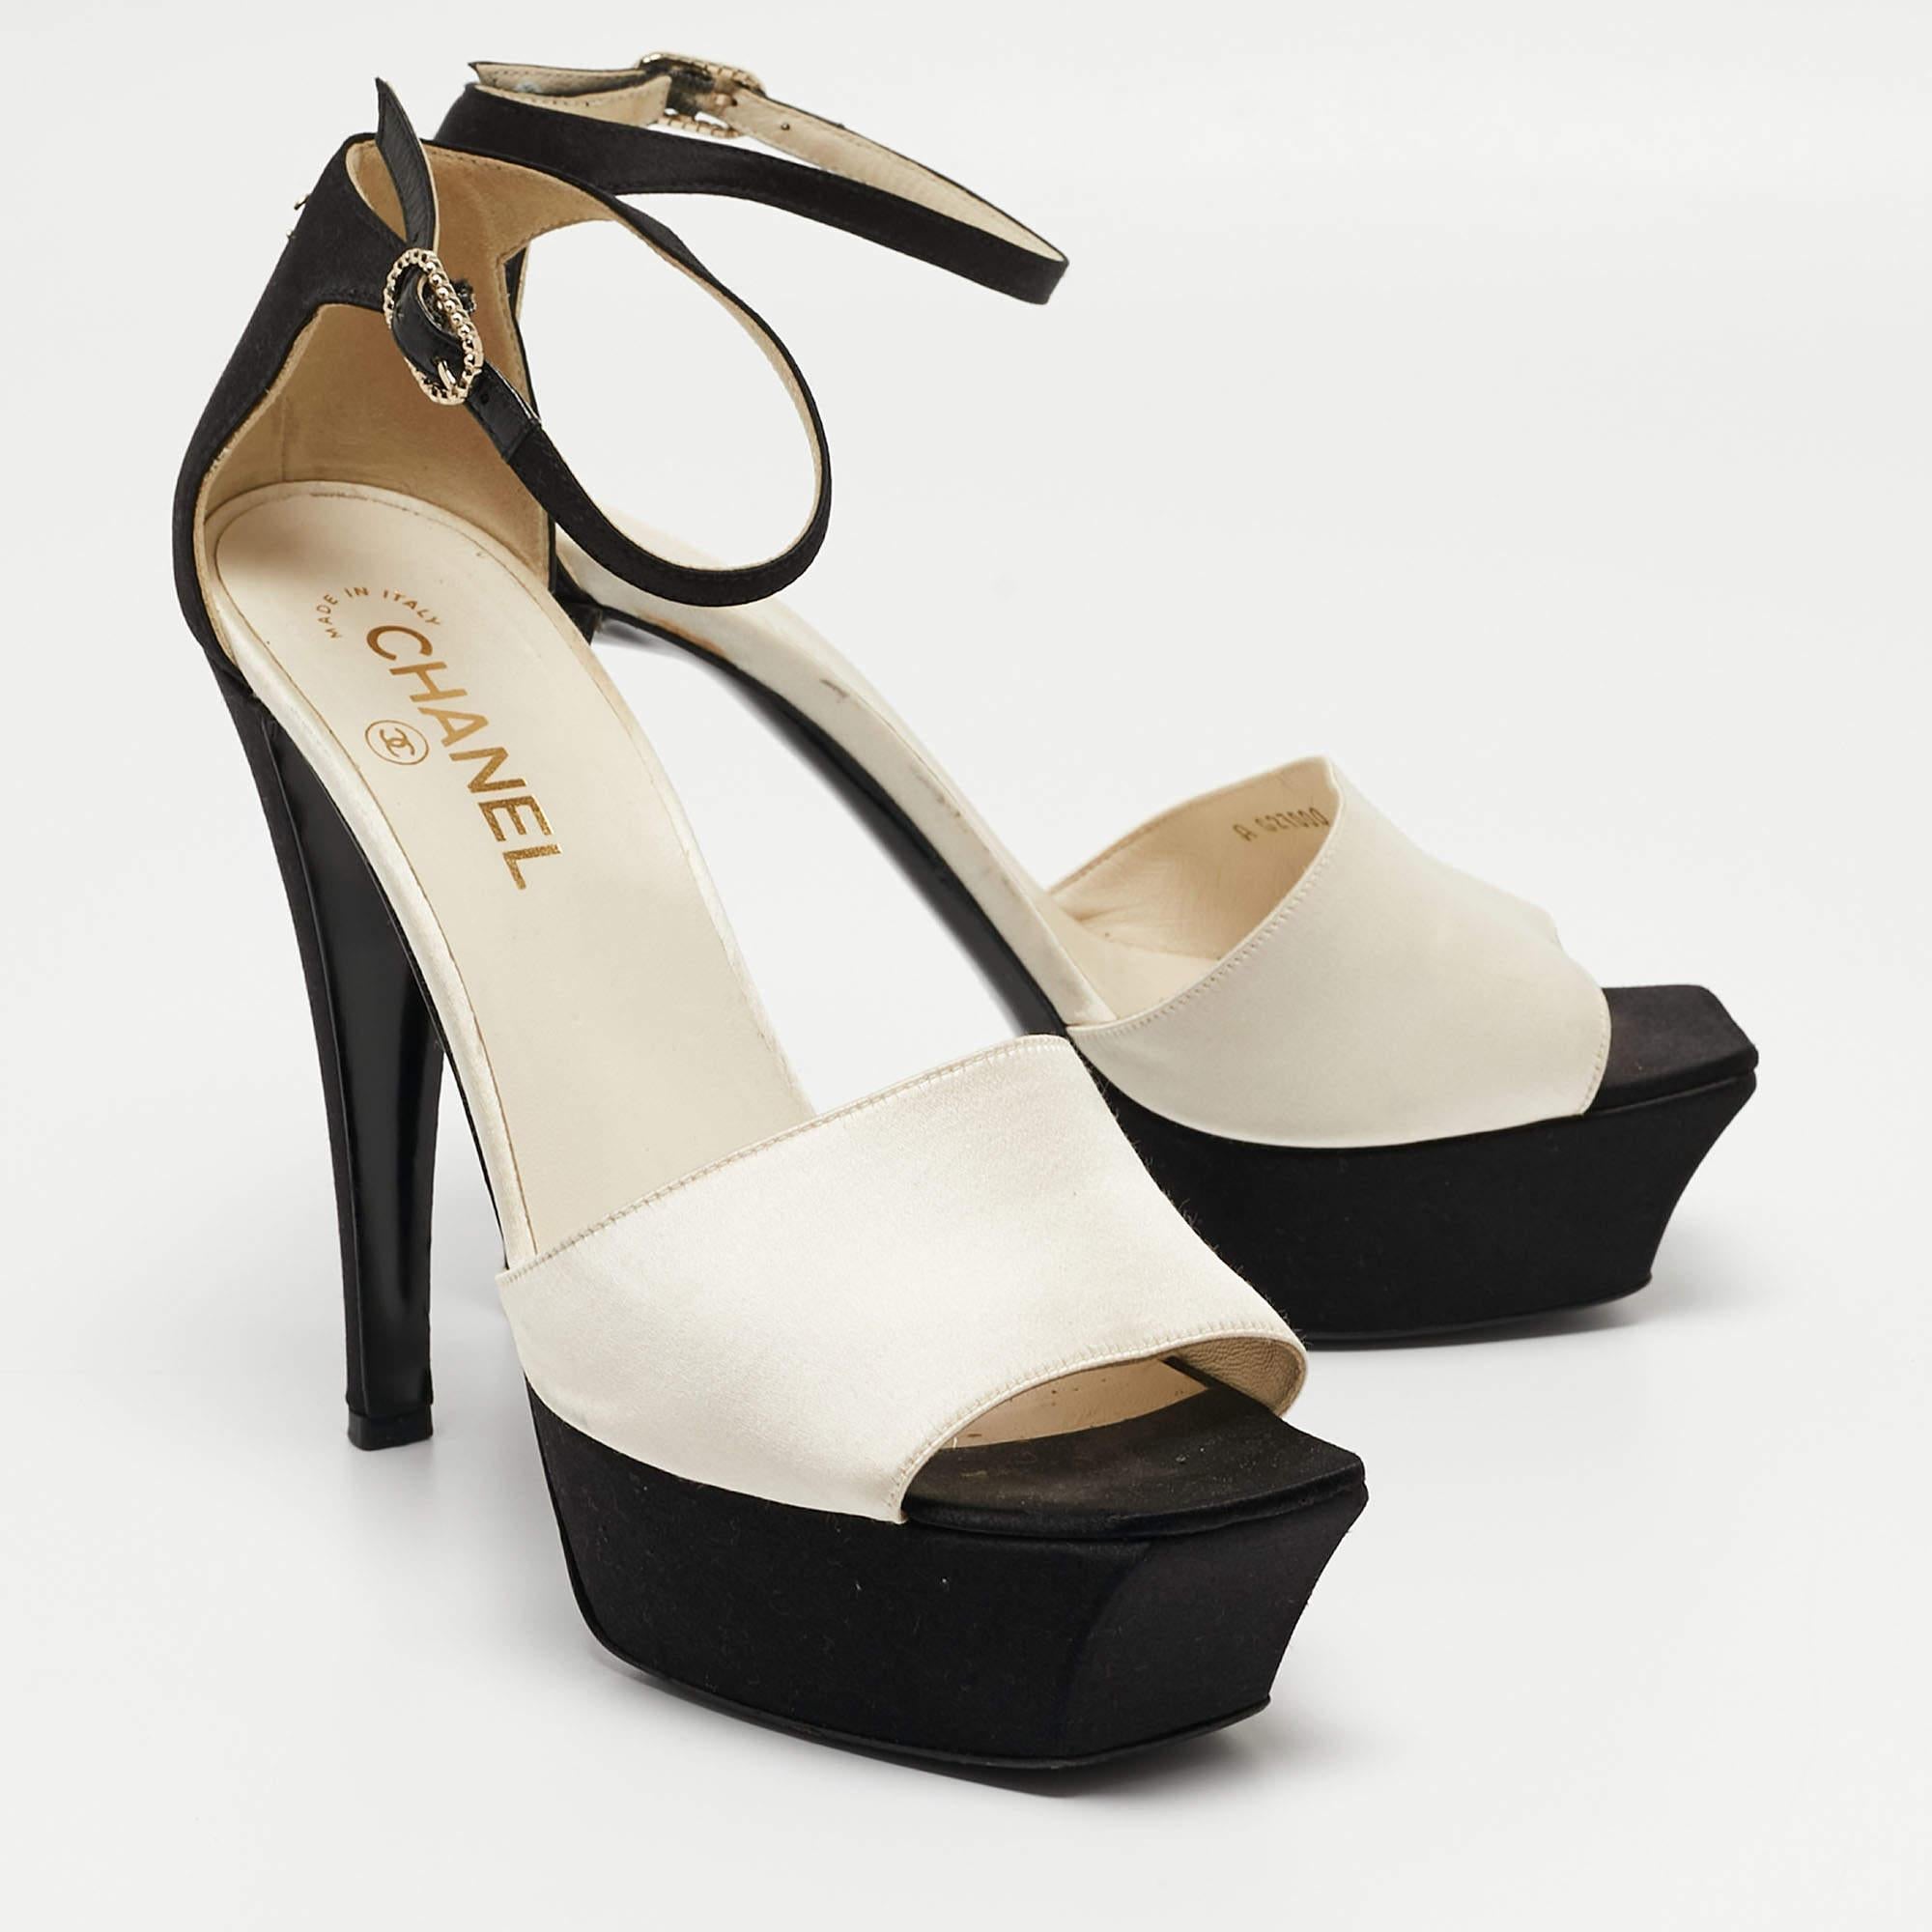  Chanel White/Black Satin Peep Toe Sandals Size 39.5 In Good Condition For Sale In Dubai, Al Qouz 2